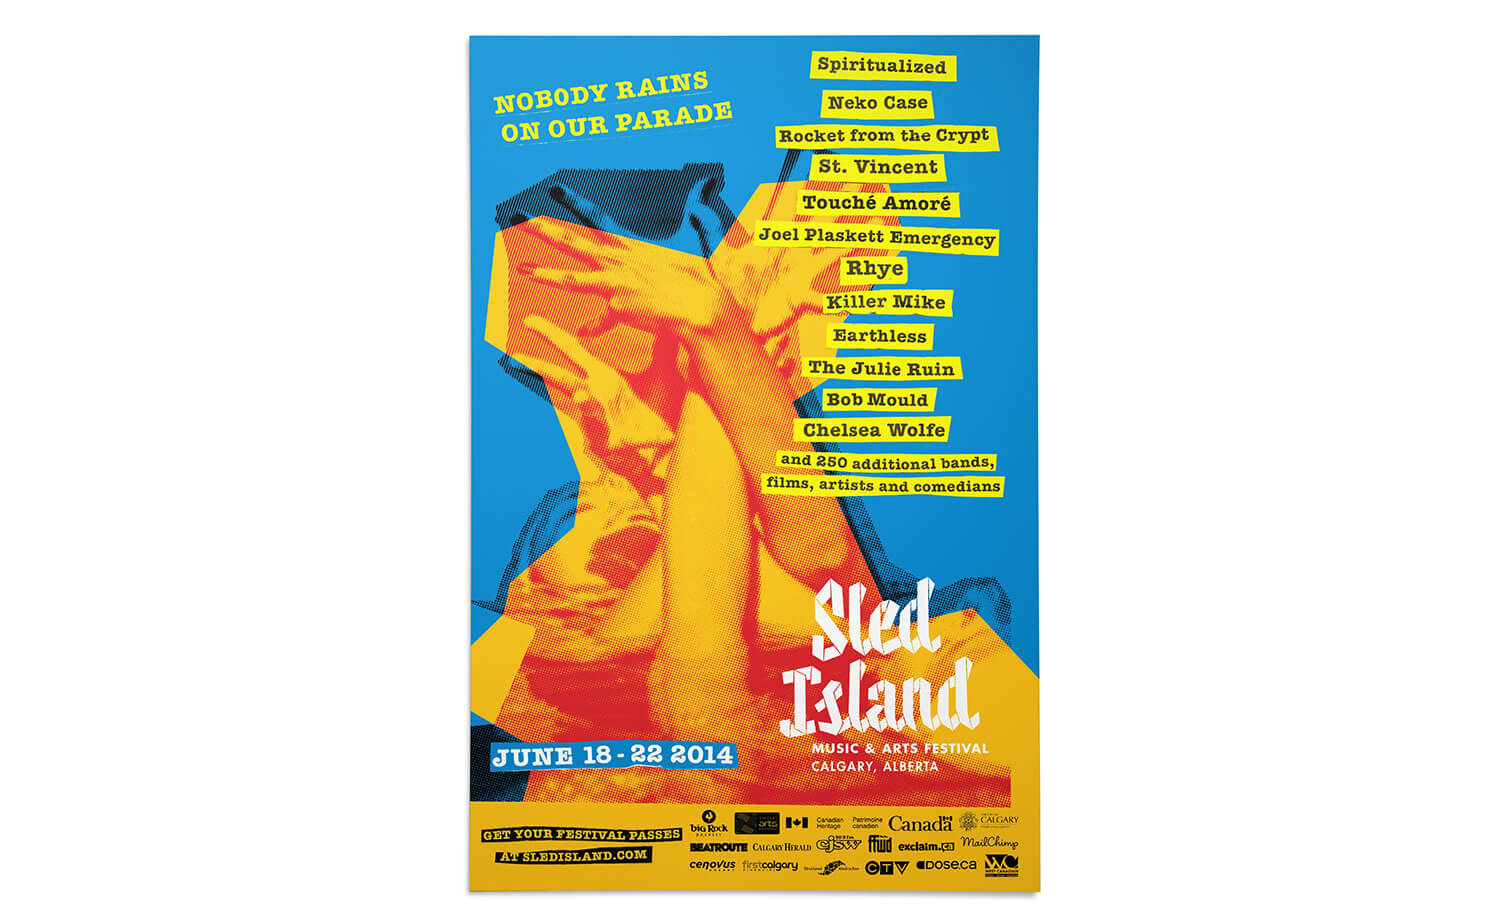 Sled Island 2014 music festival main poster design